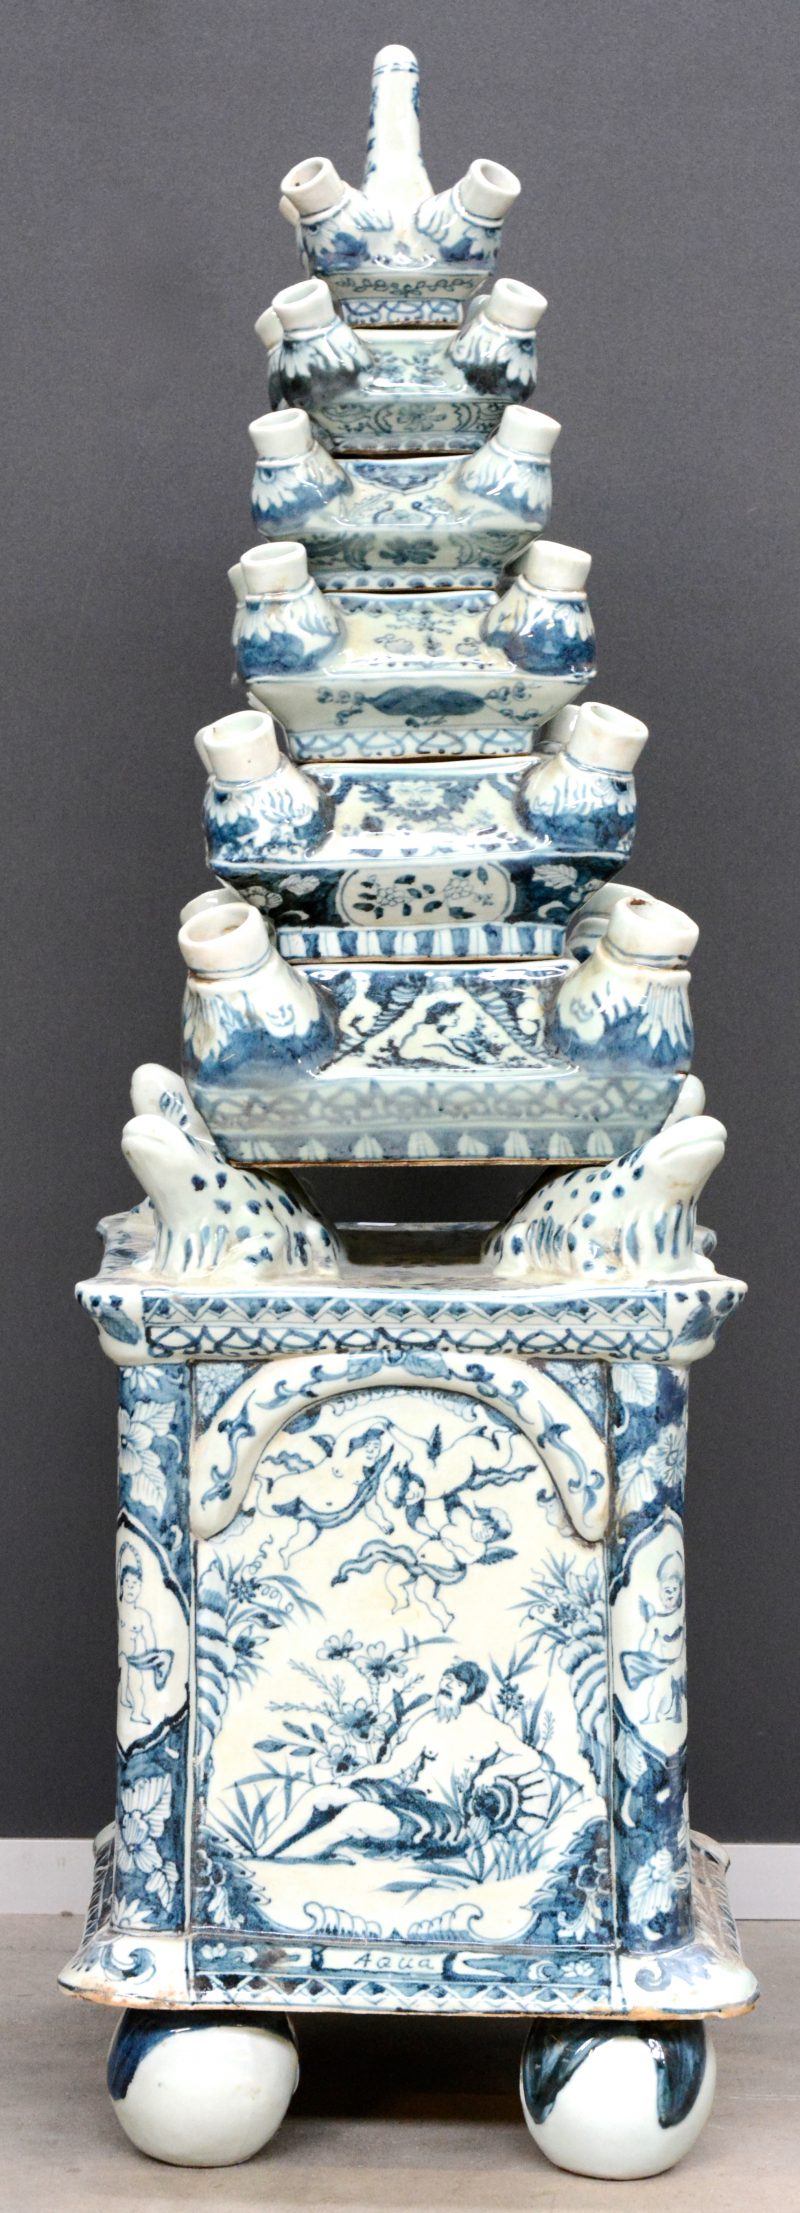 Een grote tulpenvaas, opgebouwd uit zes aflopende componenten, gedragen door vier salamanders op een zware basis. Het geheel versierd met blauw op witte decors.